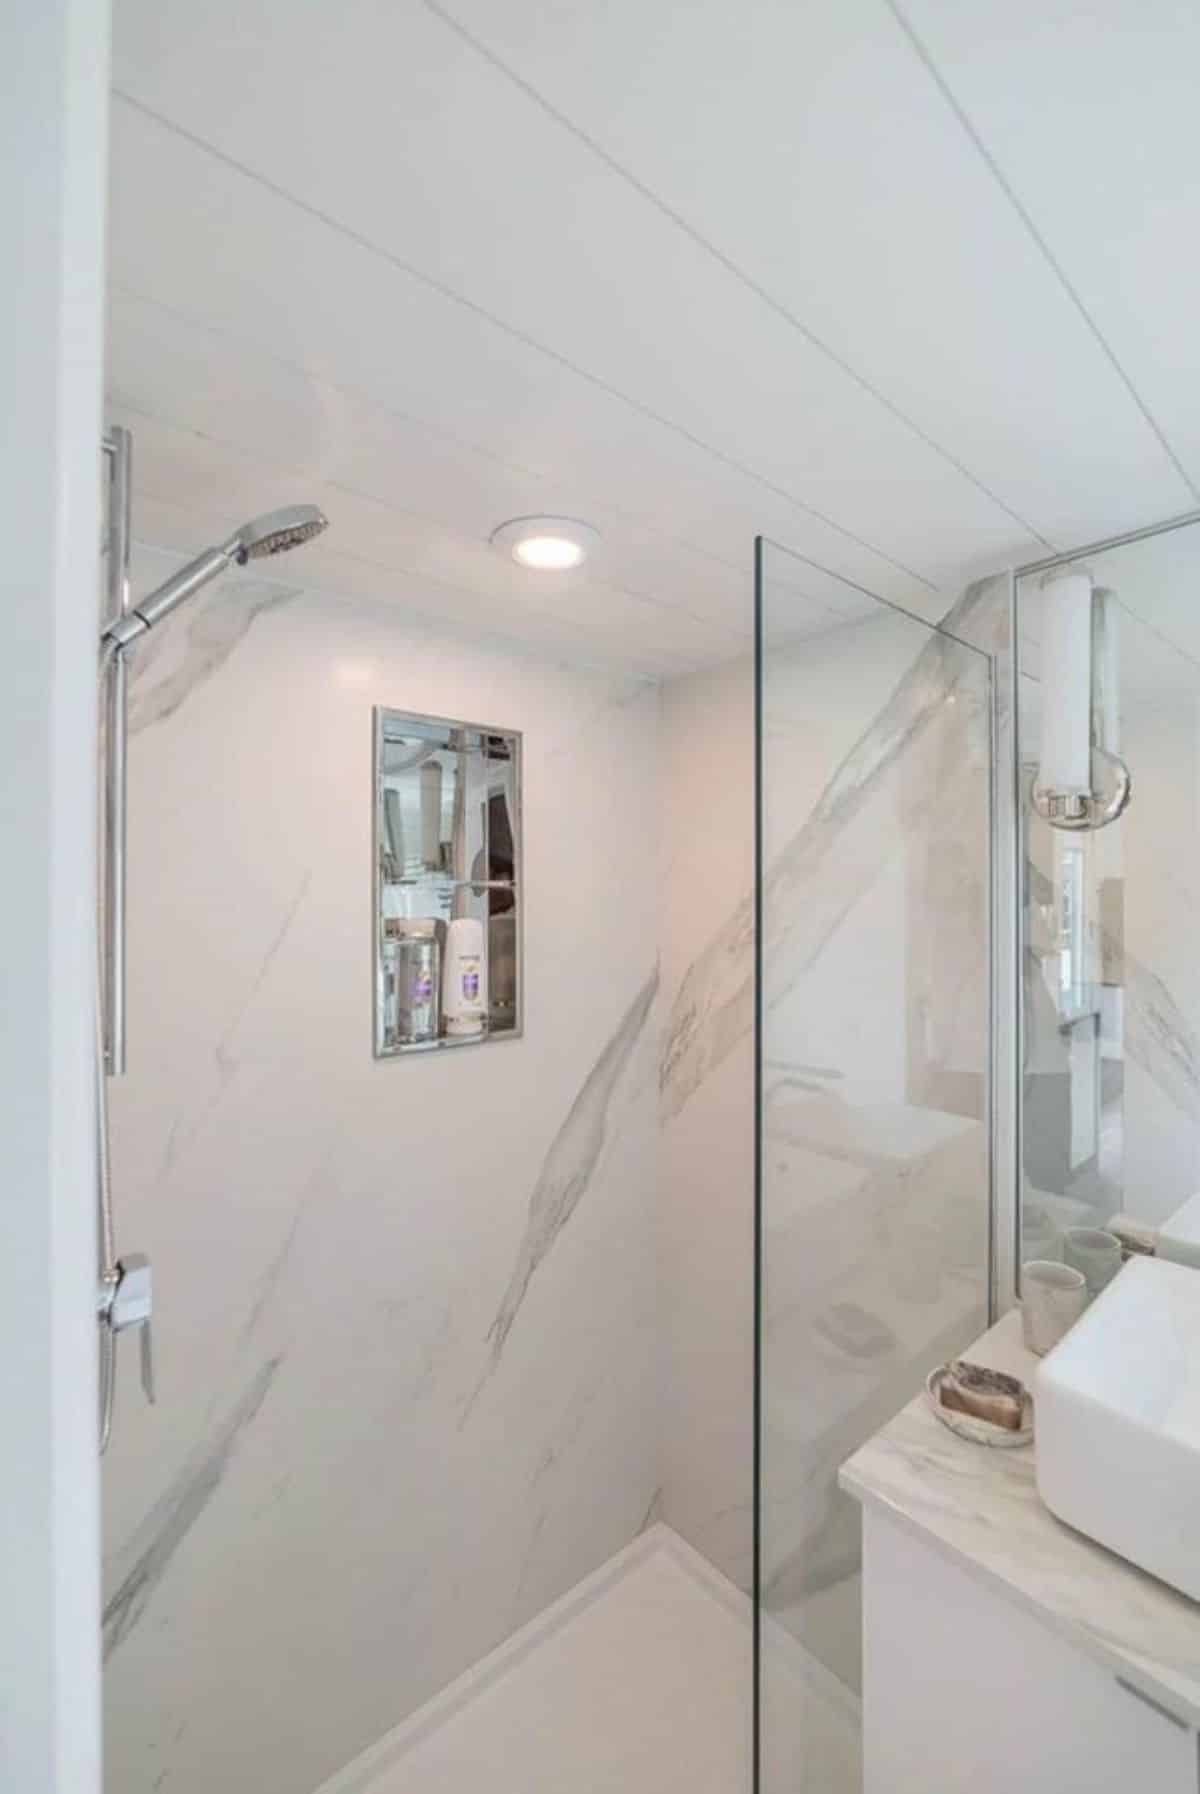 shower area with glass door in bathroom